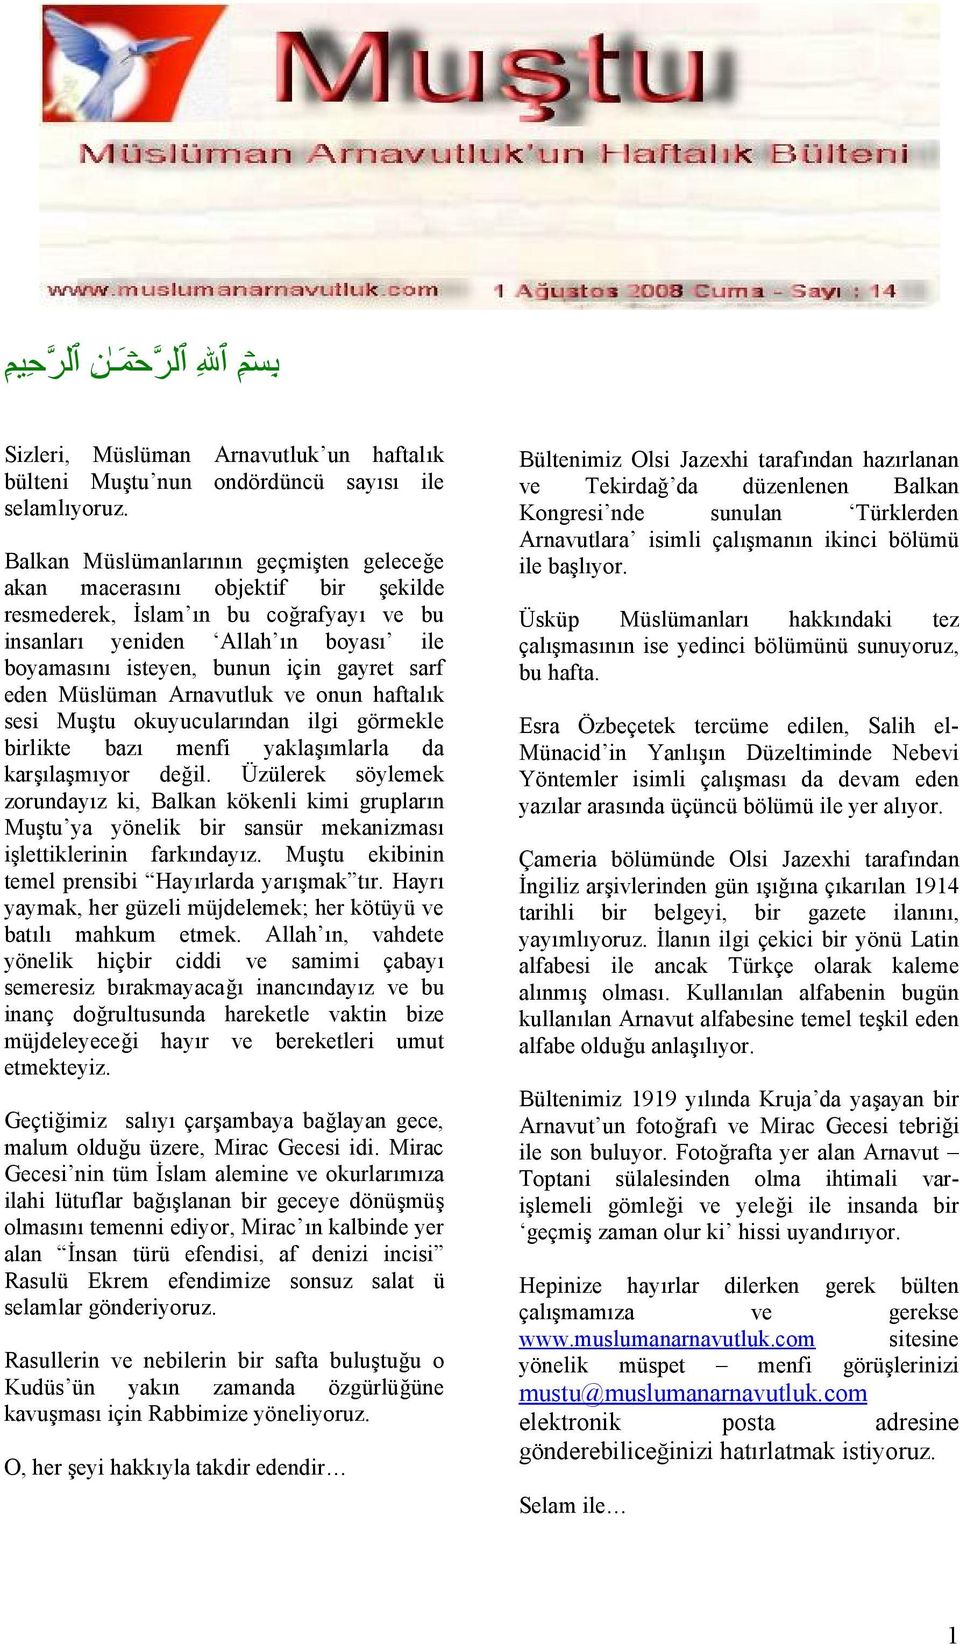 sarf eden Müslüman Arnavutluk ve onun haftalık sesi Muştu okuyucularından ilgi görmekle birlikte bazı menfi yaklaşımlarla da karşılaşmıyor değil.